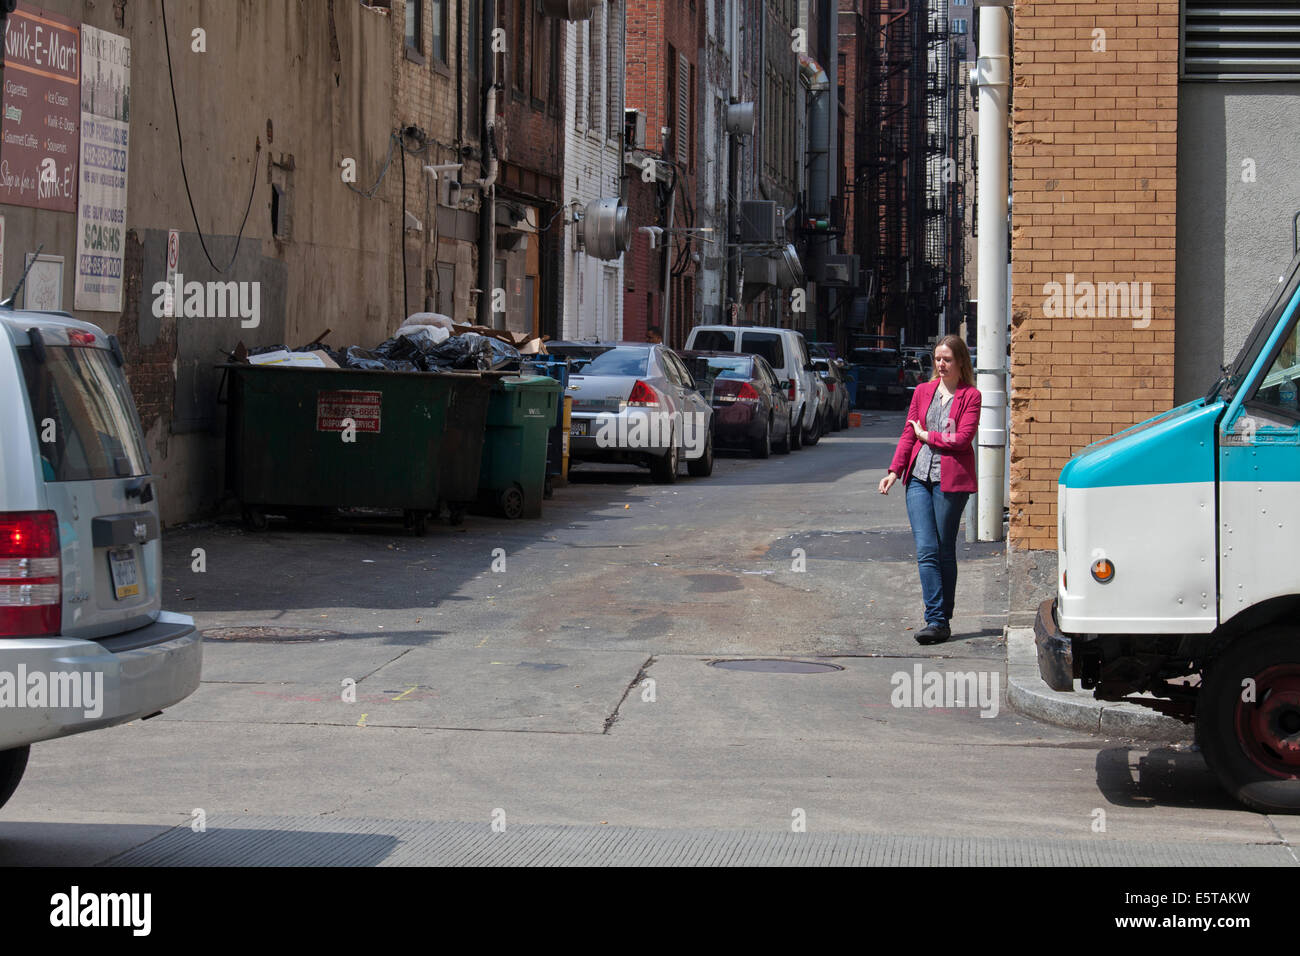 Pittsburgh, Pennsylvanie - une femme se trouve dans une ruelle, fumer une cigarette. Banque D'Images